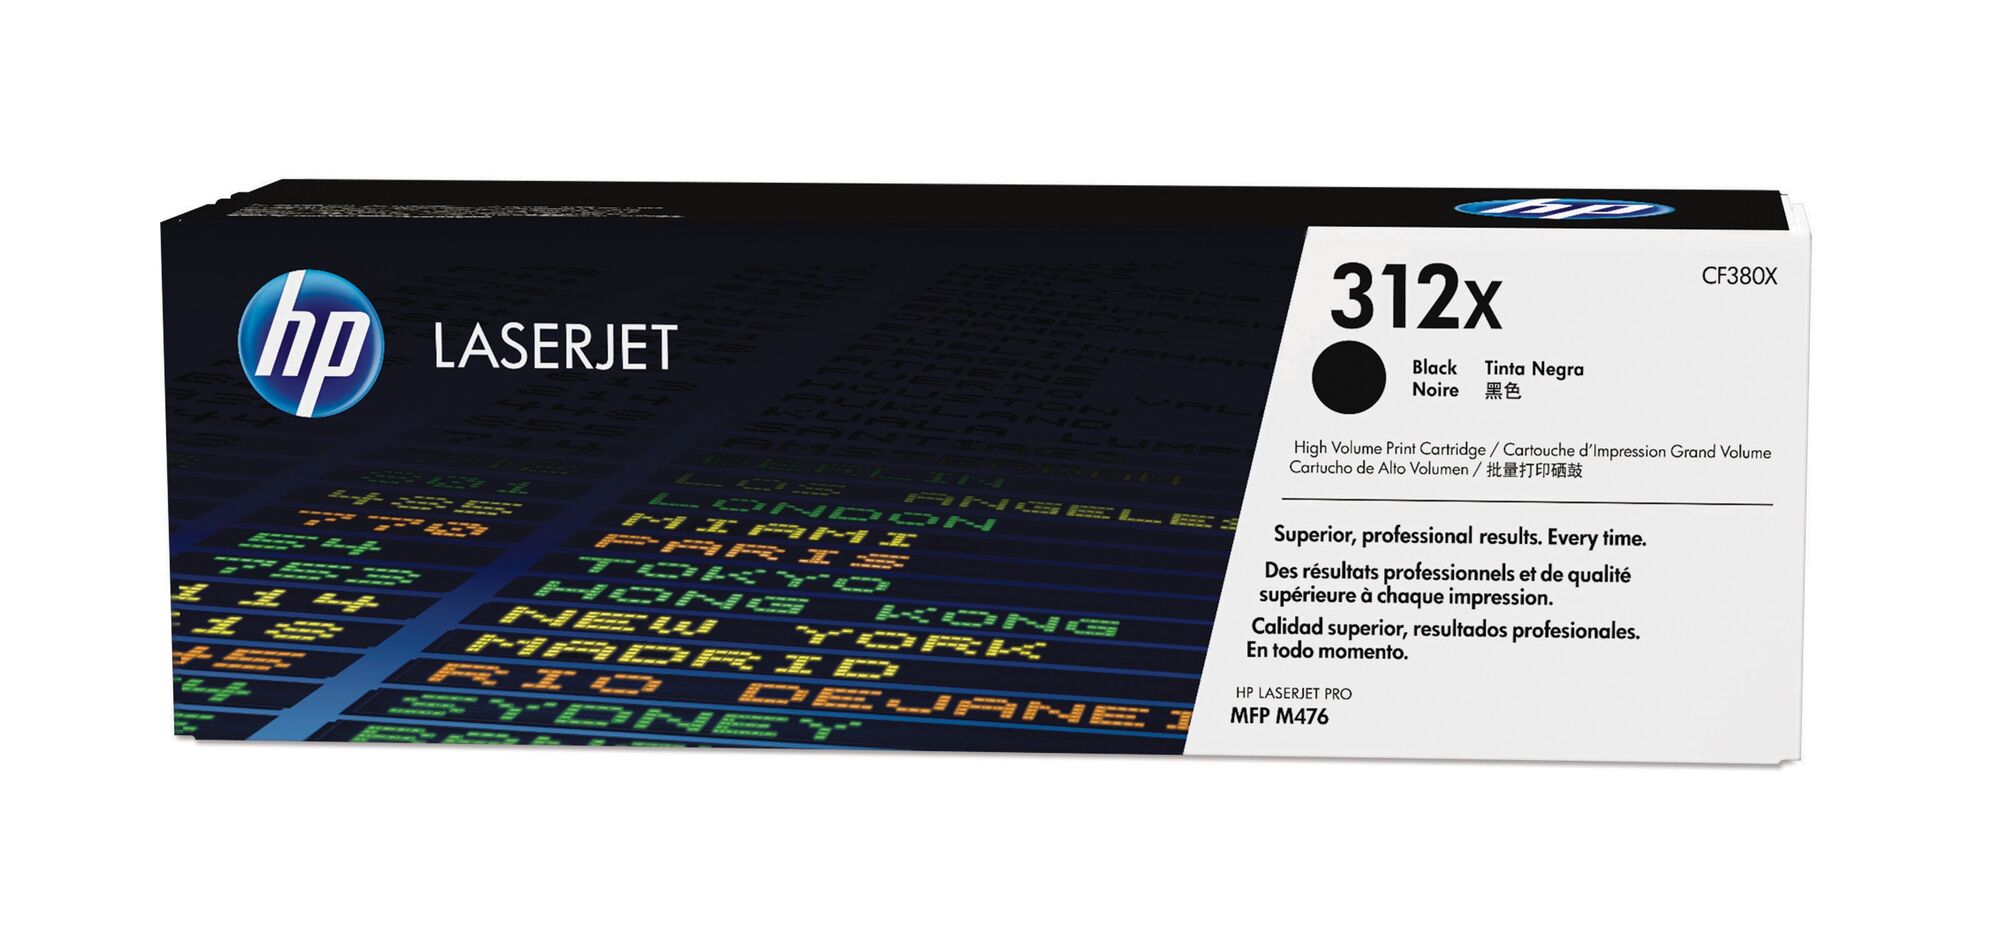 Картридж для печати HP Картридж HP 312X CF380X вид печати лазерный, цвет Черный, емкость